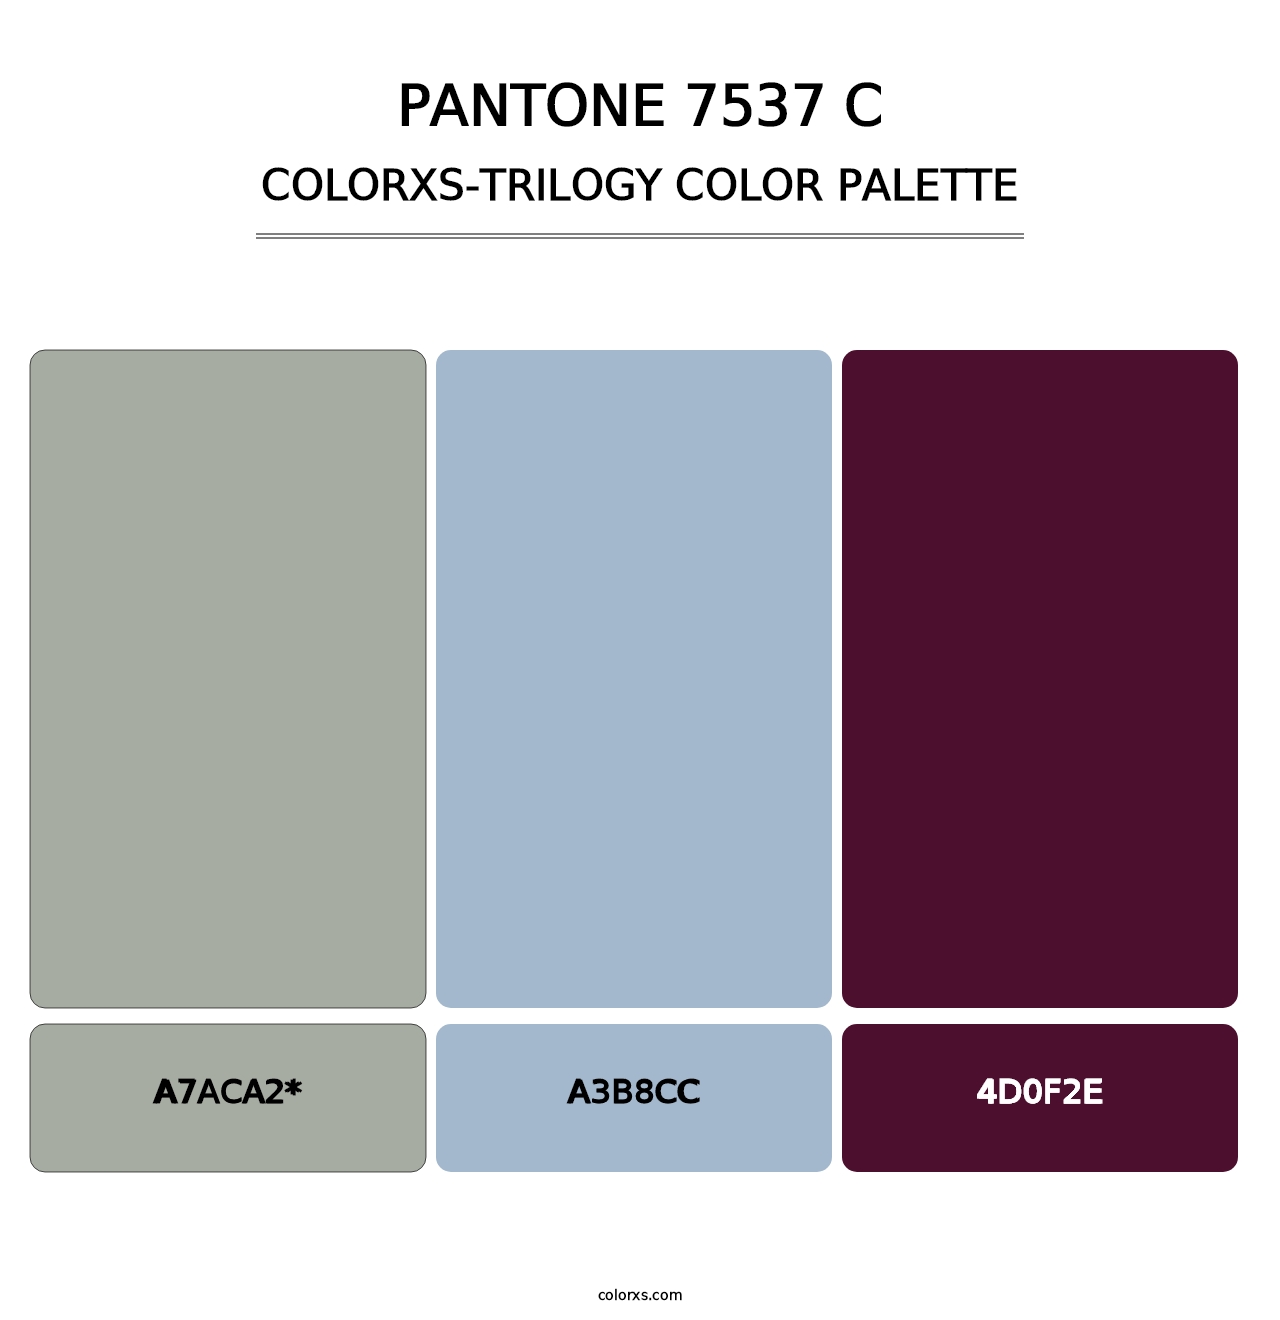 PANTONE 7537 C - Colorxs Trilogy Palette